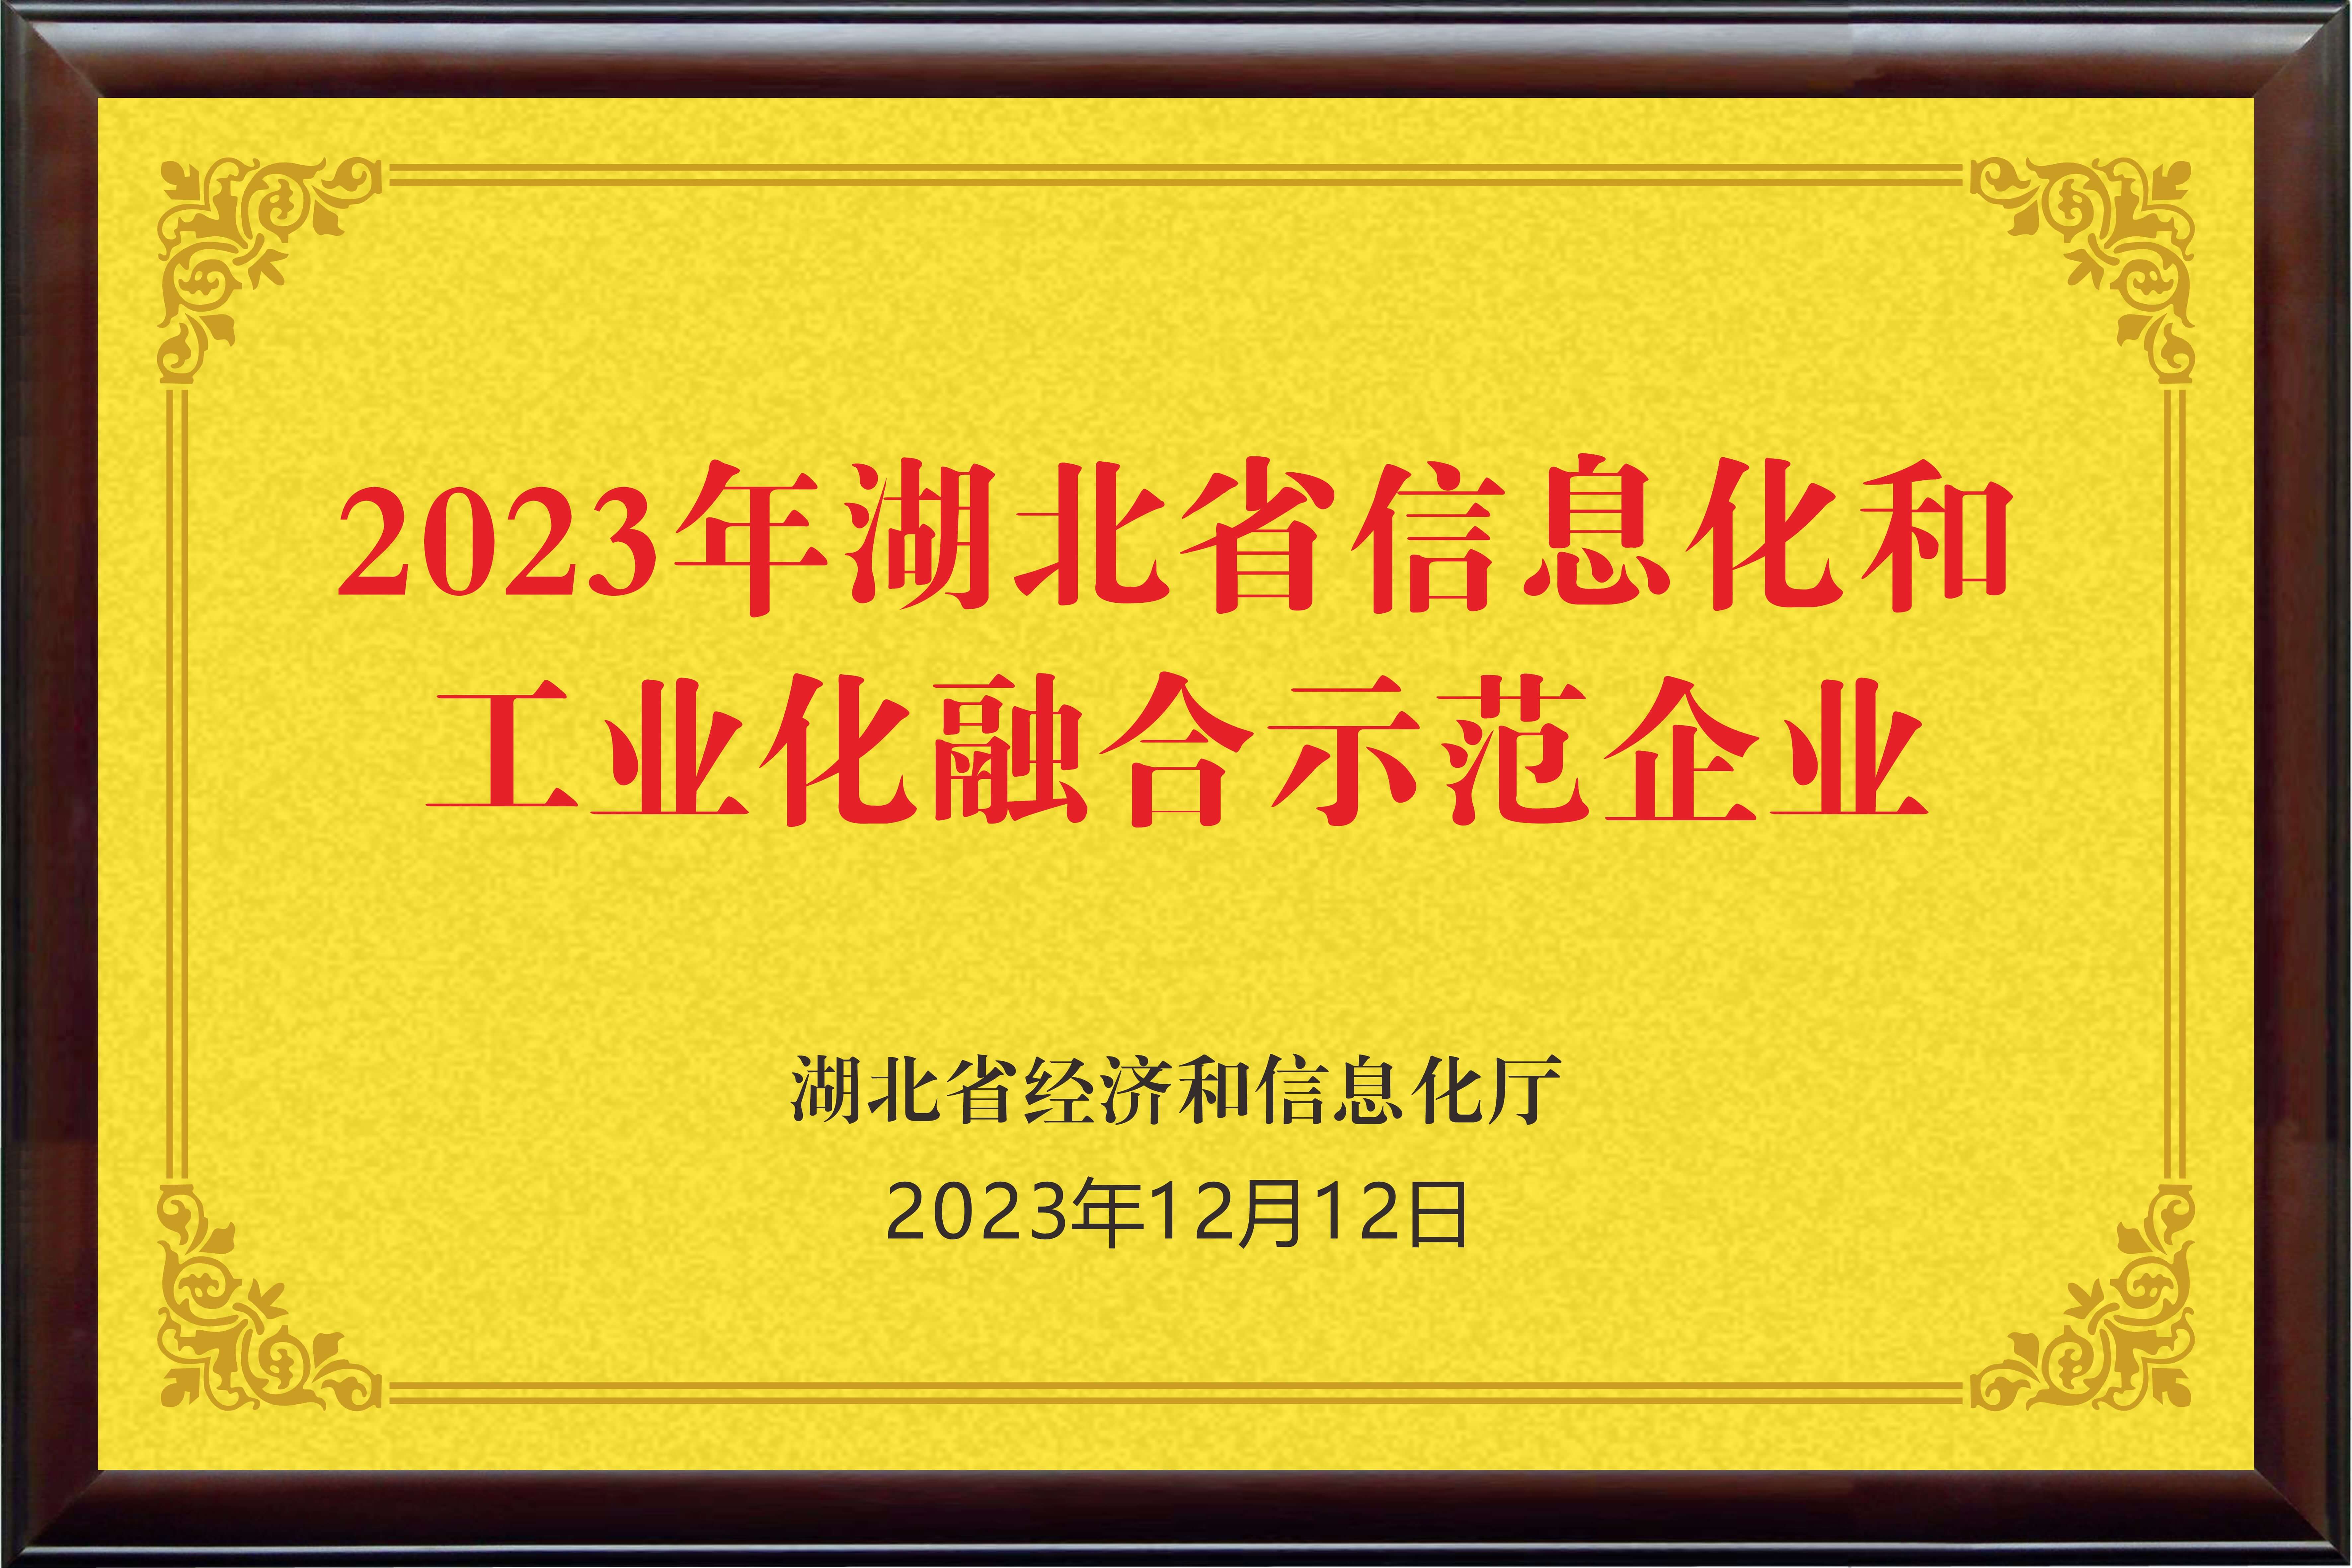 2023年湖北省信息化和工业化融合示范企业